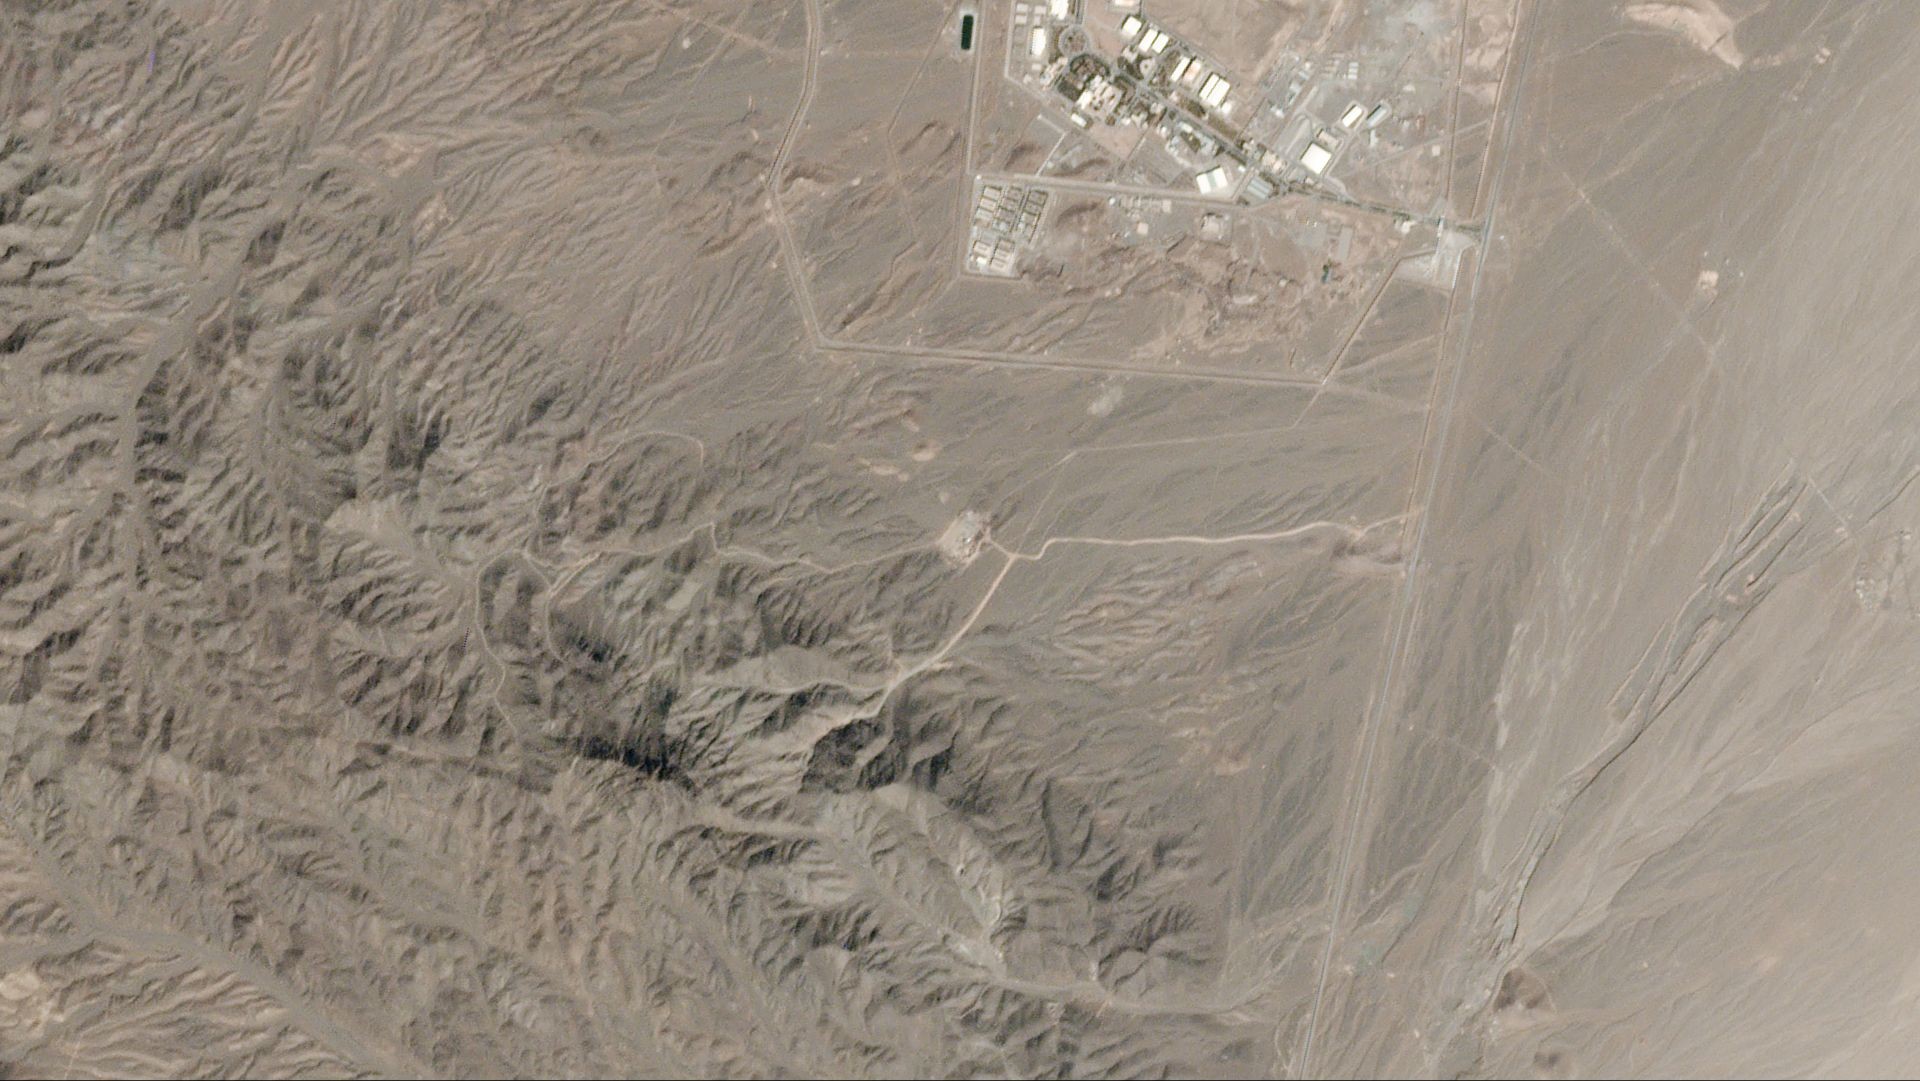 Irański kompleks nuklearny w Natanz - zobrazowanie z 20 października 2020 roku - w dolnej części zdjęcia, widoczna nowa droga dojazdowa do składu budowlanego i miejsca docelowej konstrukcji u podnóża pobliskiego pasma wzniesień. Fot. Planet Labs [planet.com]